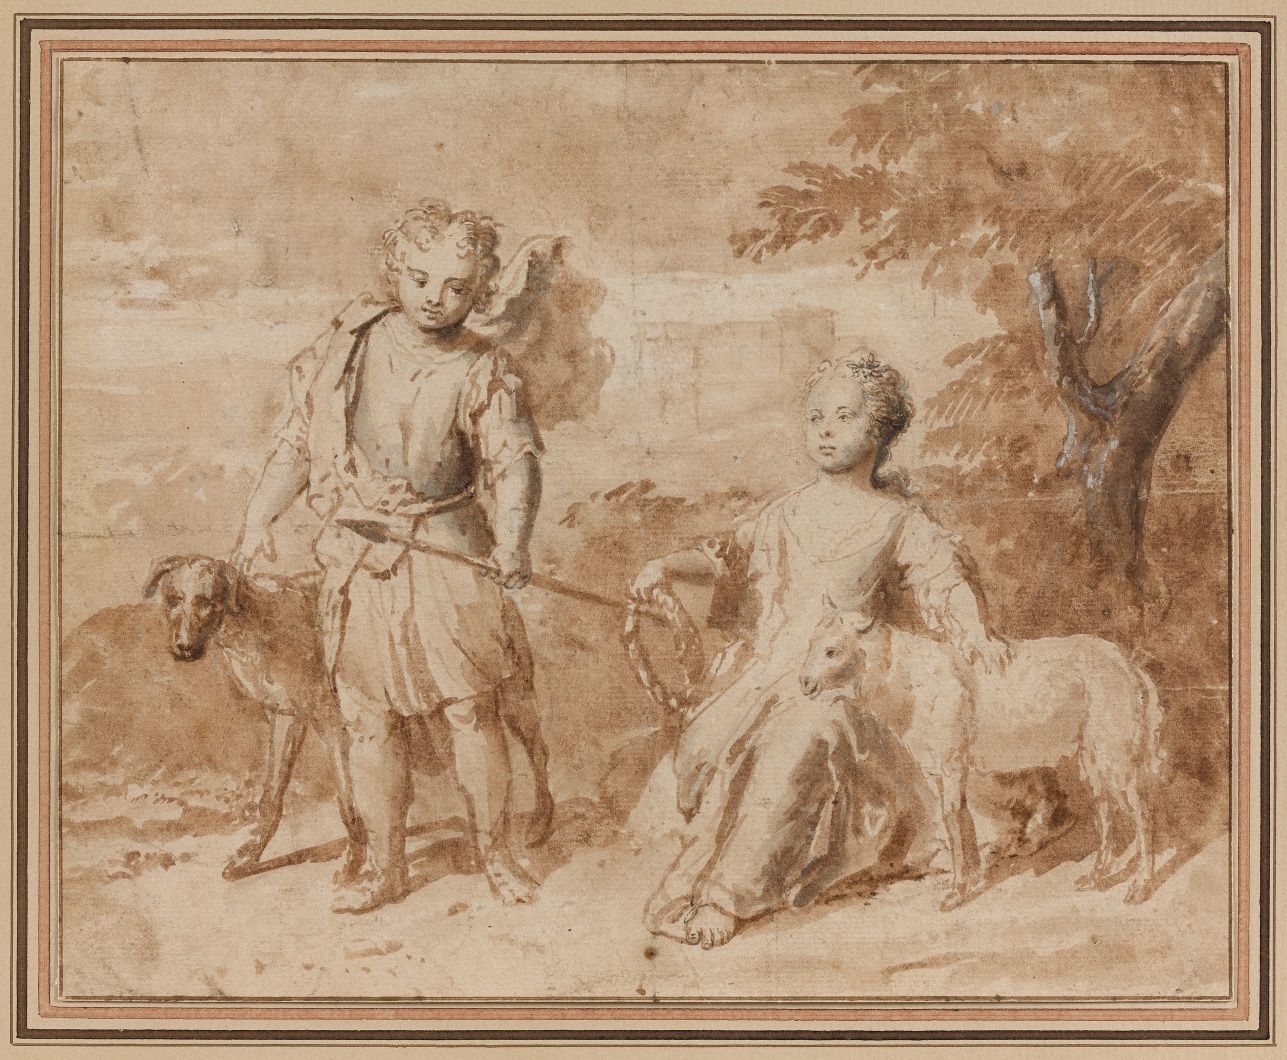 Null 18世纪弗拉芒画派：一个小男孩和他的狗以及一个年轻女孩的肖像。钢笔和棕色墨水，棕色和灰色水洗。背面注有 "Netcher"。高13.7 - 宽13厘米&hellip;